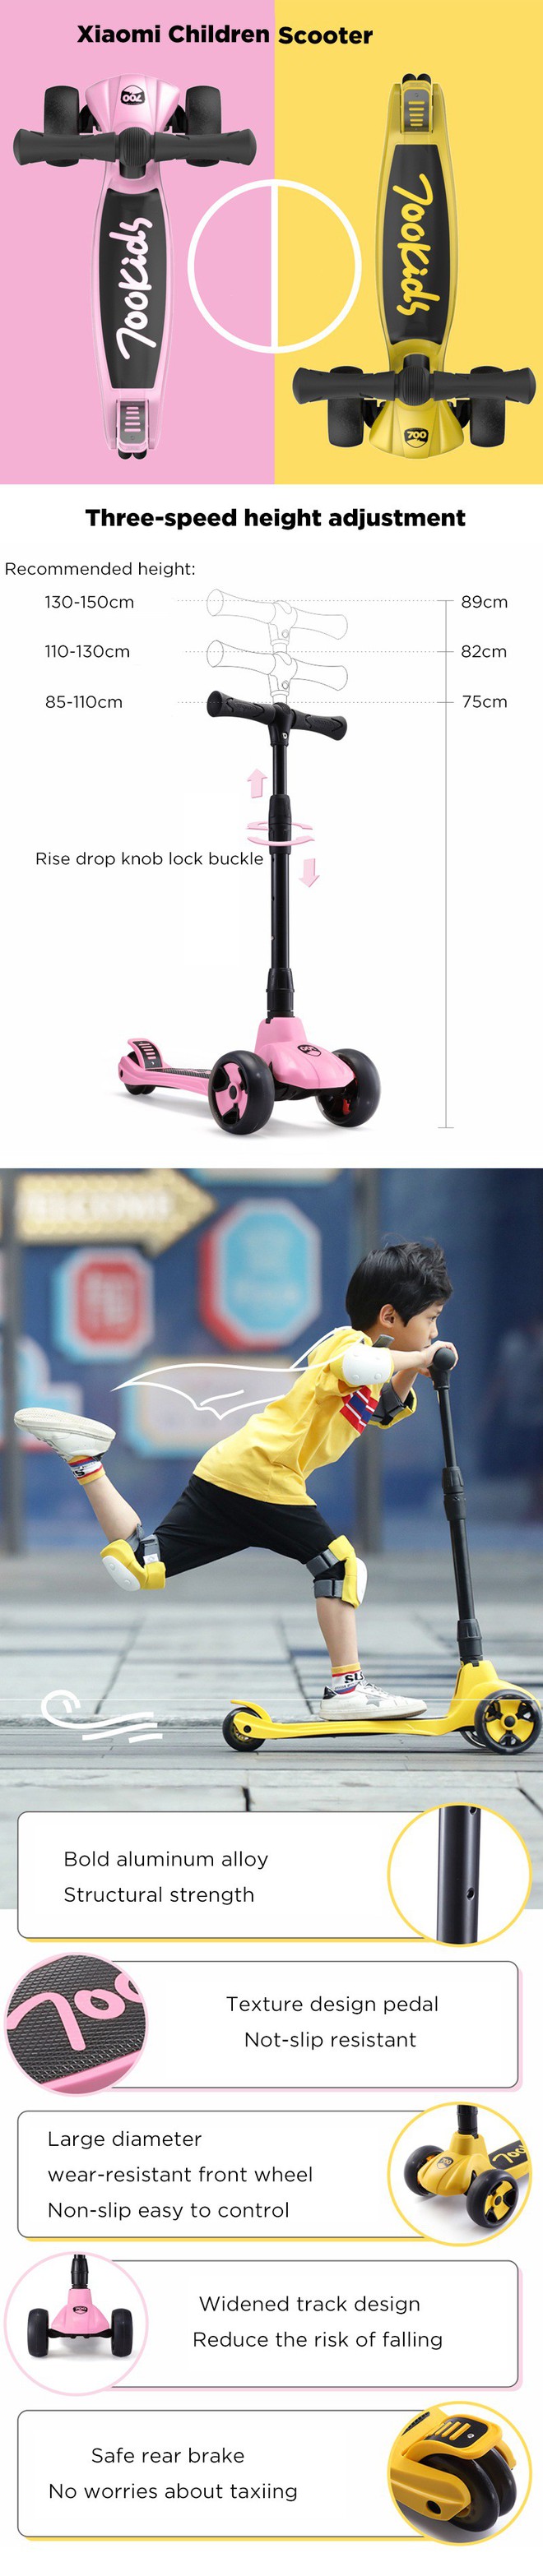 Xiaomi ra mắt xe trượt scooter cho trẻ em, gập lại dễ dàng, thiết kế chống té ngã, giá 837 ngàn - Ảnh 3.